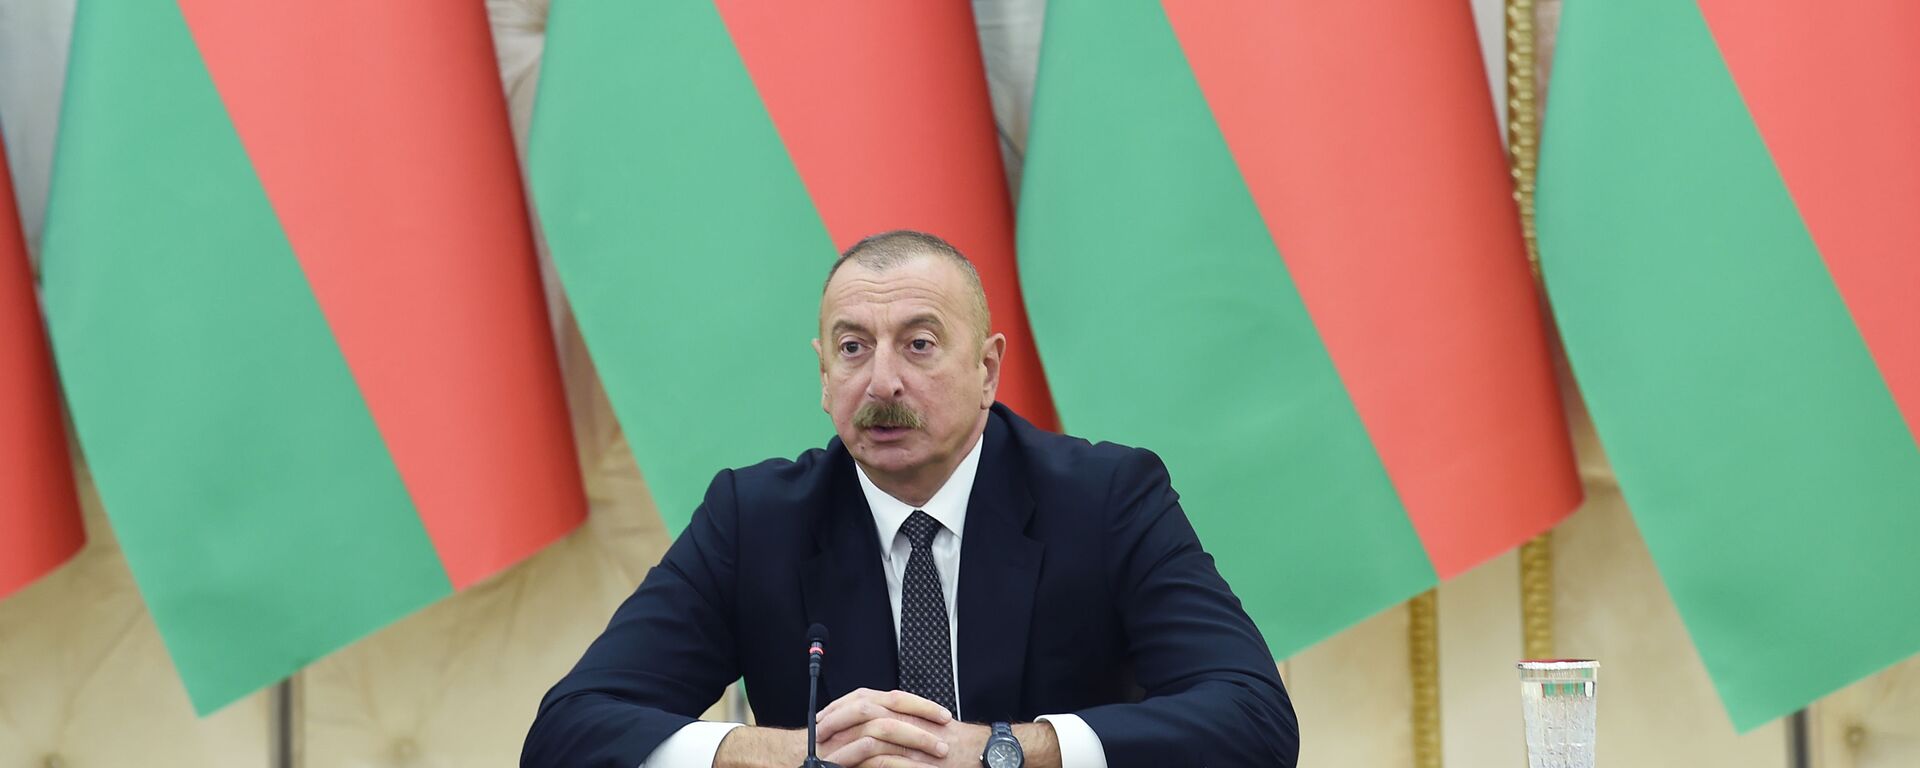 Президент Азербайджанской Республики Ильхам Алиев и Президент Беларуси Александр Лукашенко выступили с заявлениями для прессы - Sputnik Azərbaycan, 1920, 14.04.2021